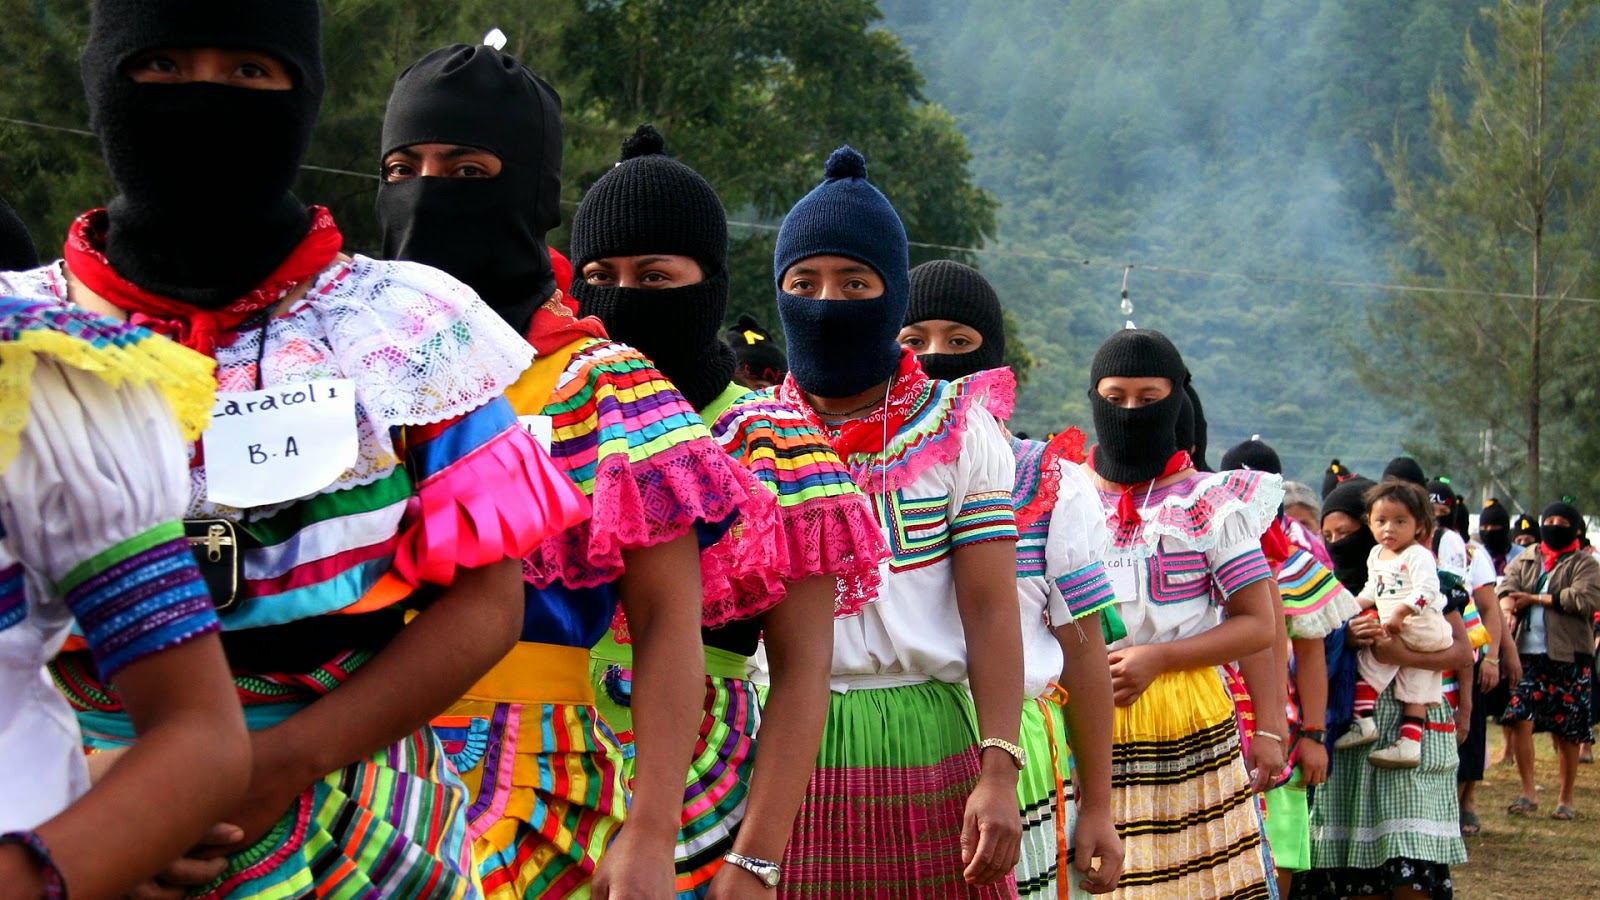 EZLN: candidatura independiente rumbo al 2018